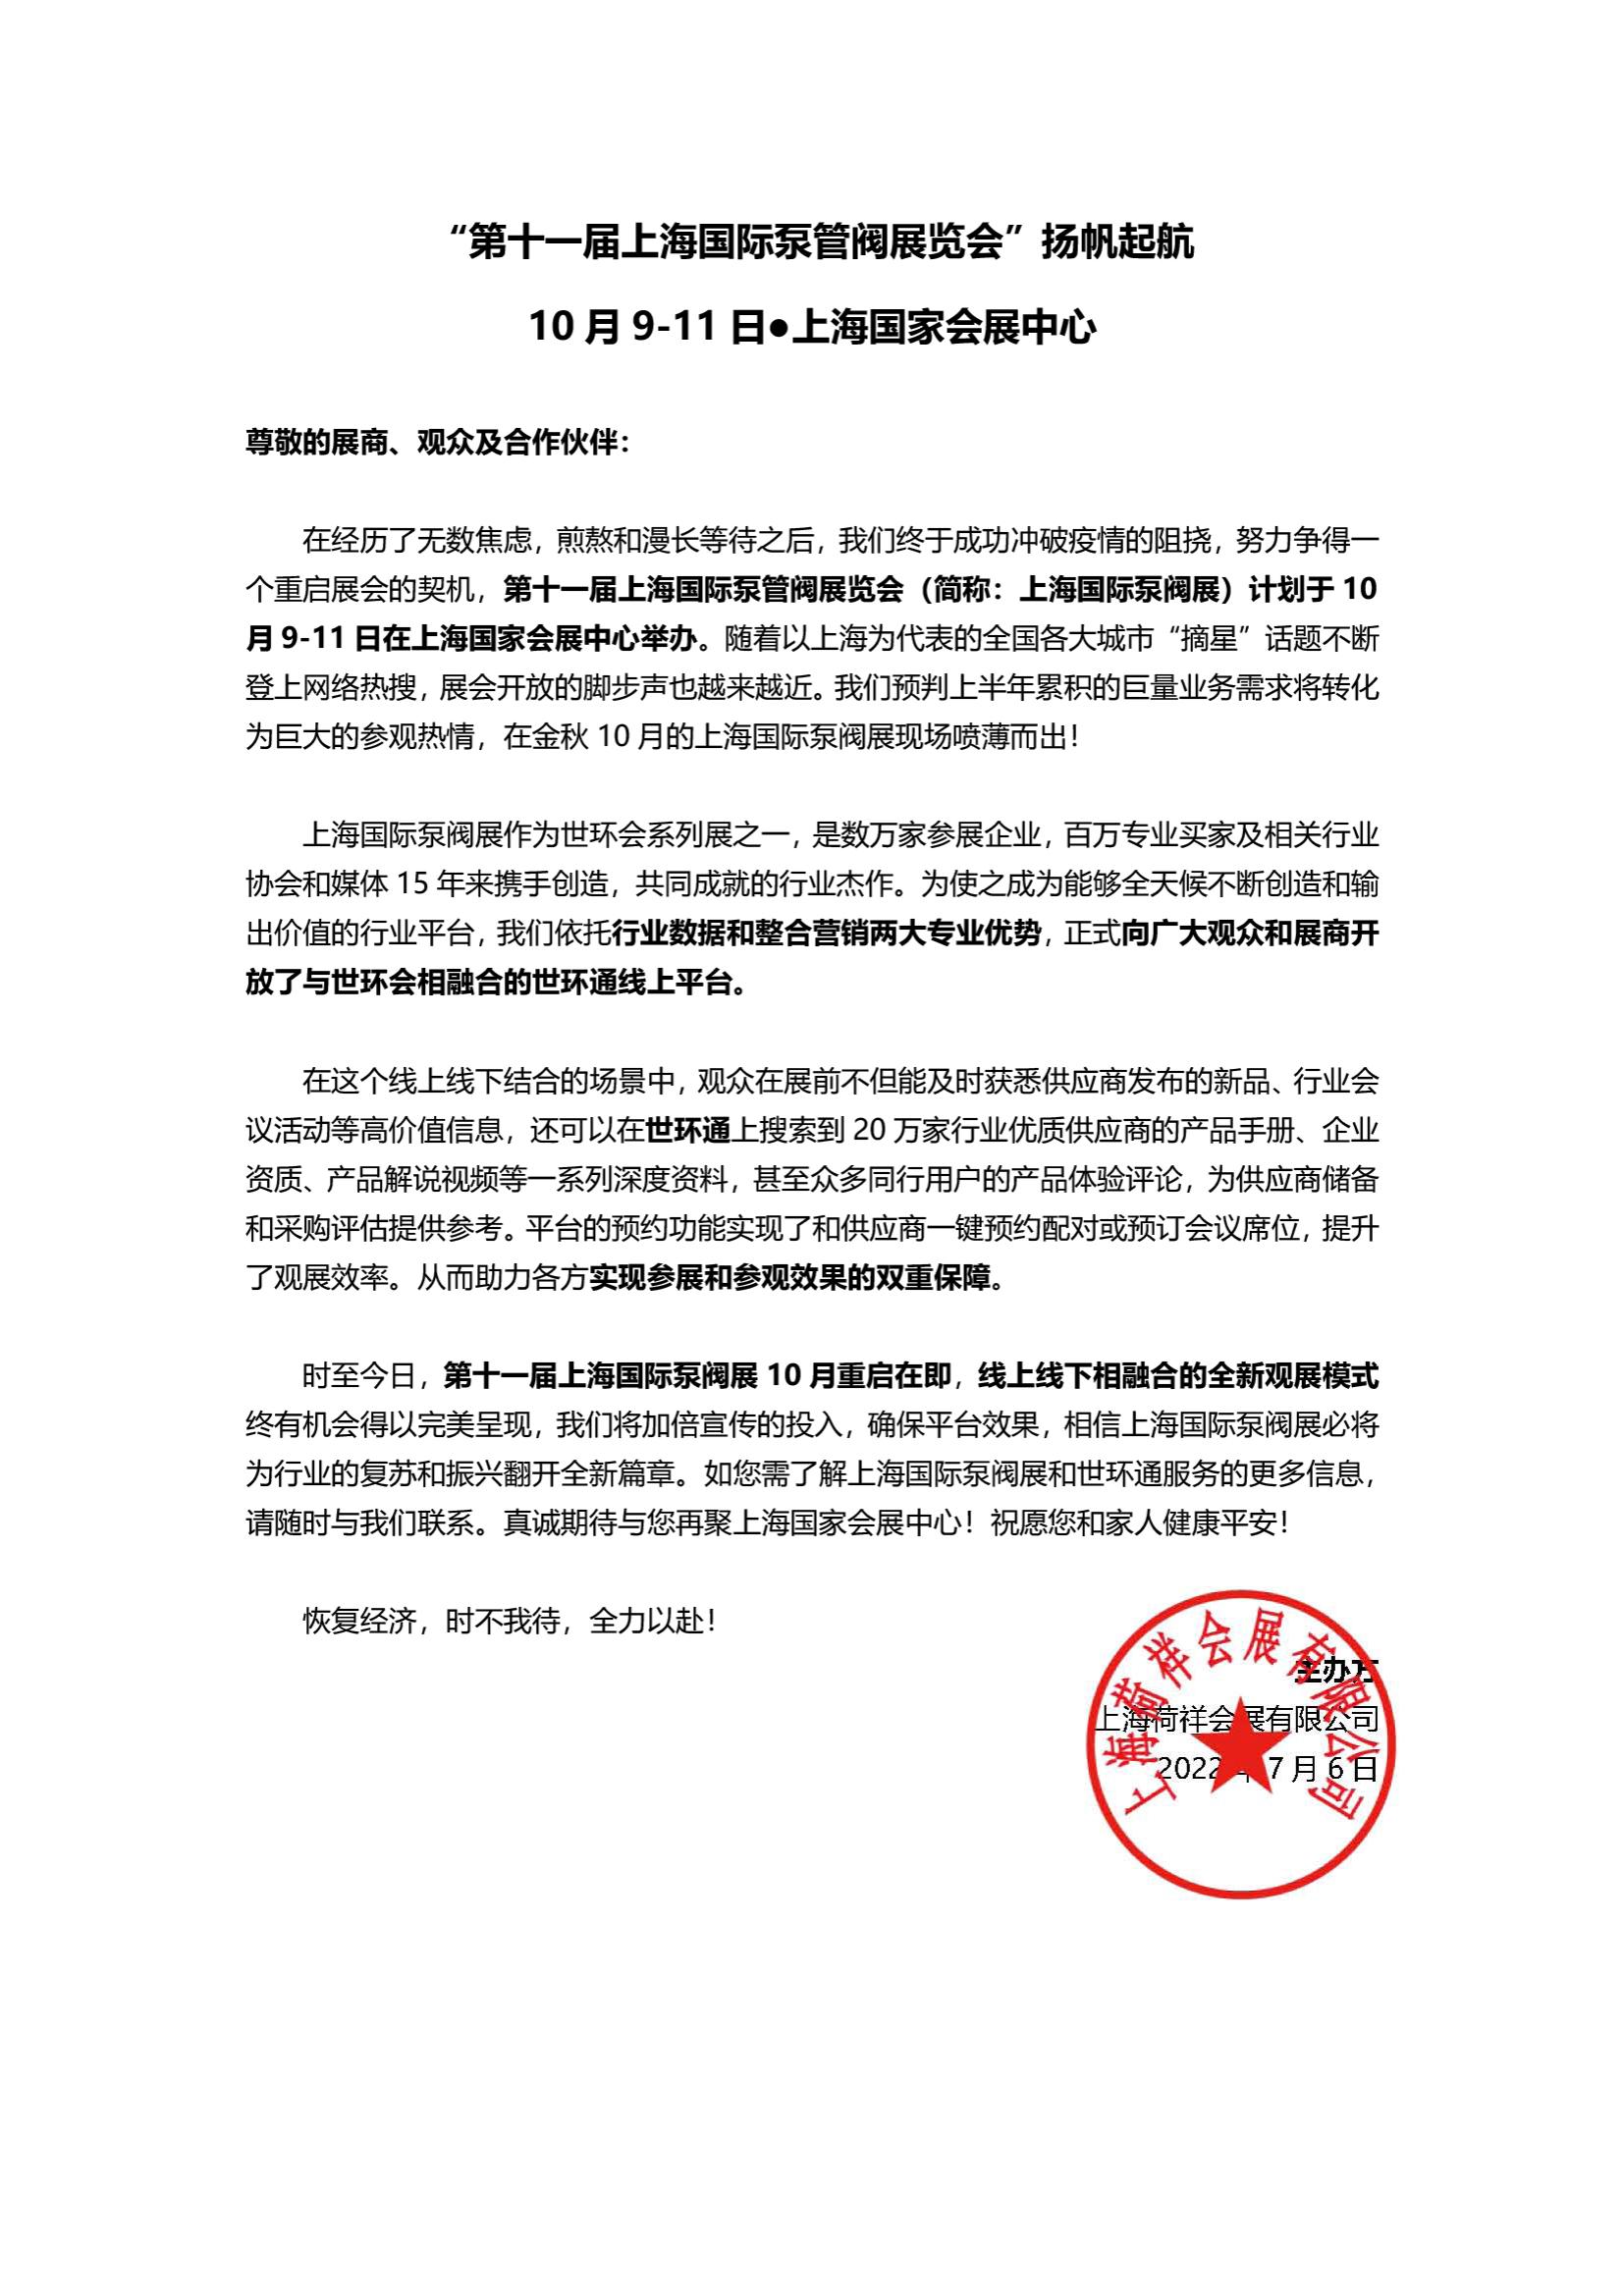 “疫”别多日，全力以“复”丨2022上海国际泵阀展定档10月 展会快讯 第1张